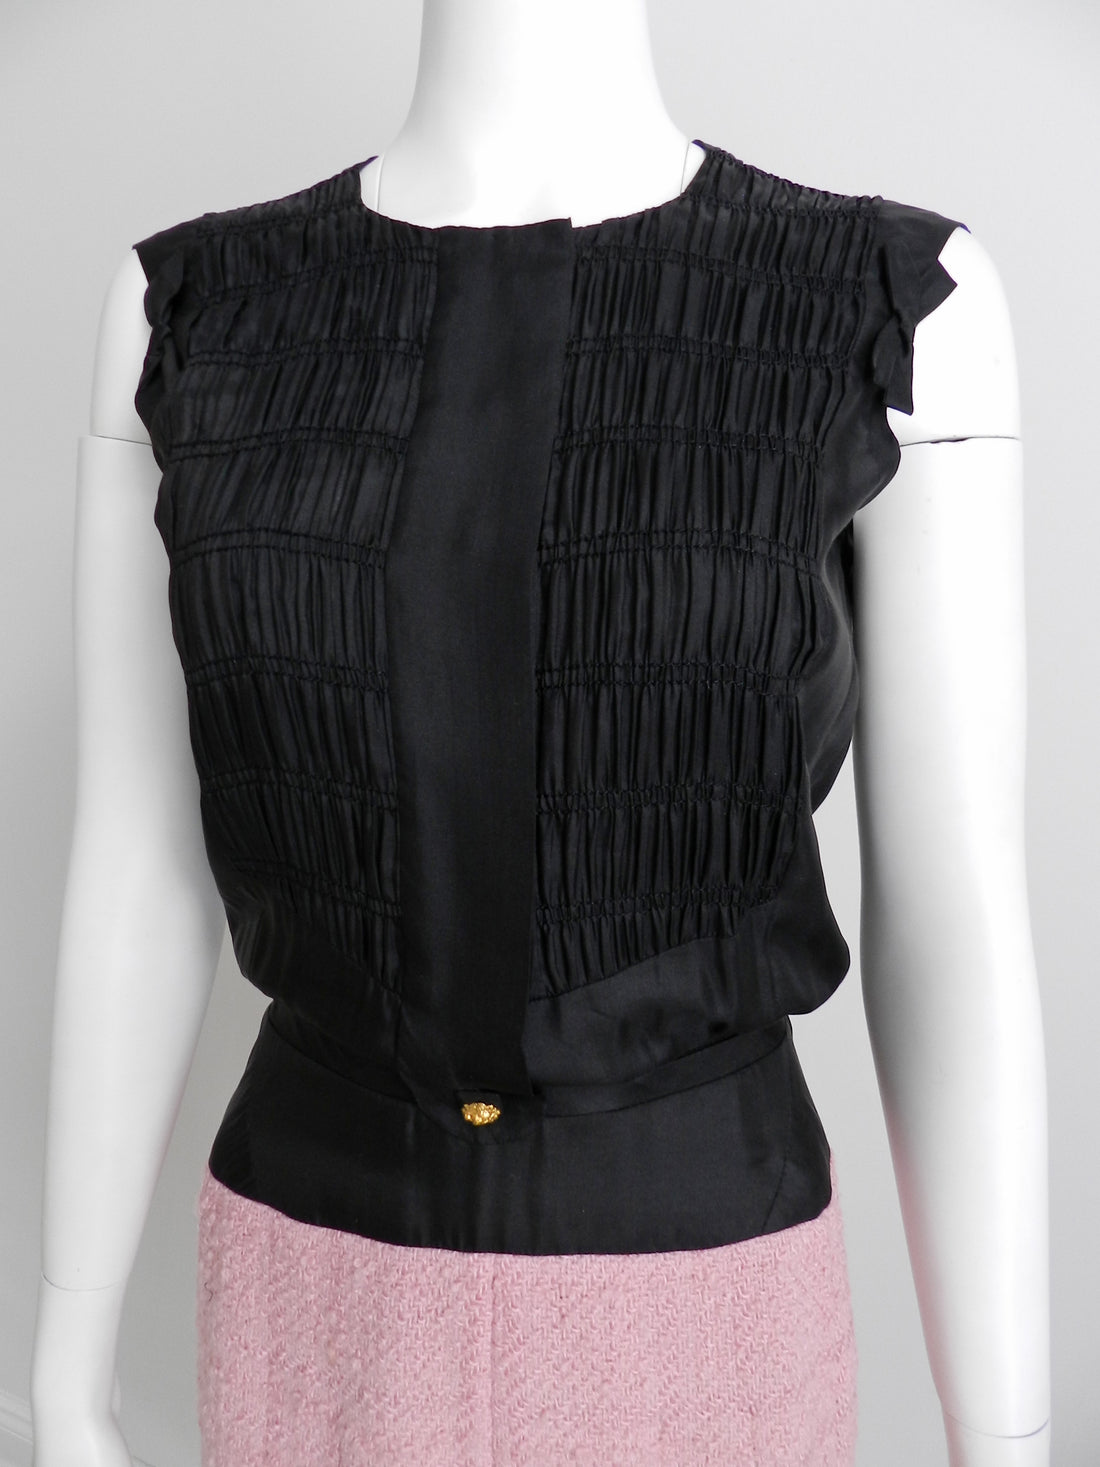 Chanel vintage 1963 Haute Couture Pink Suit